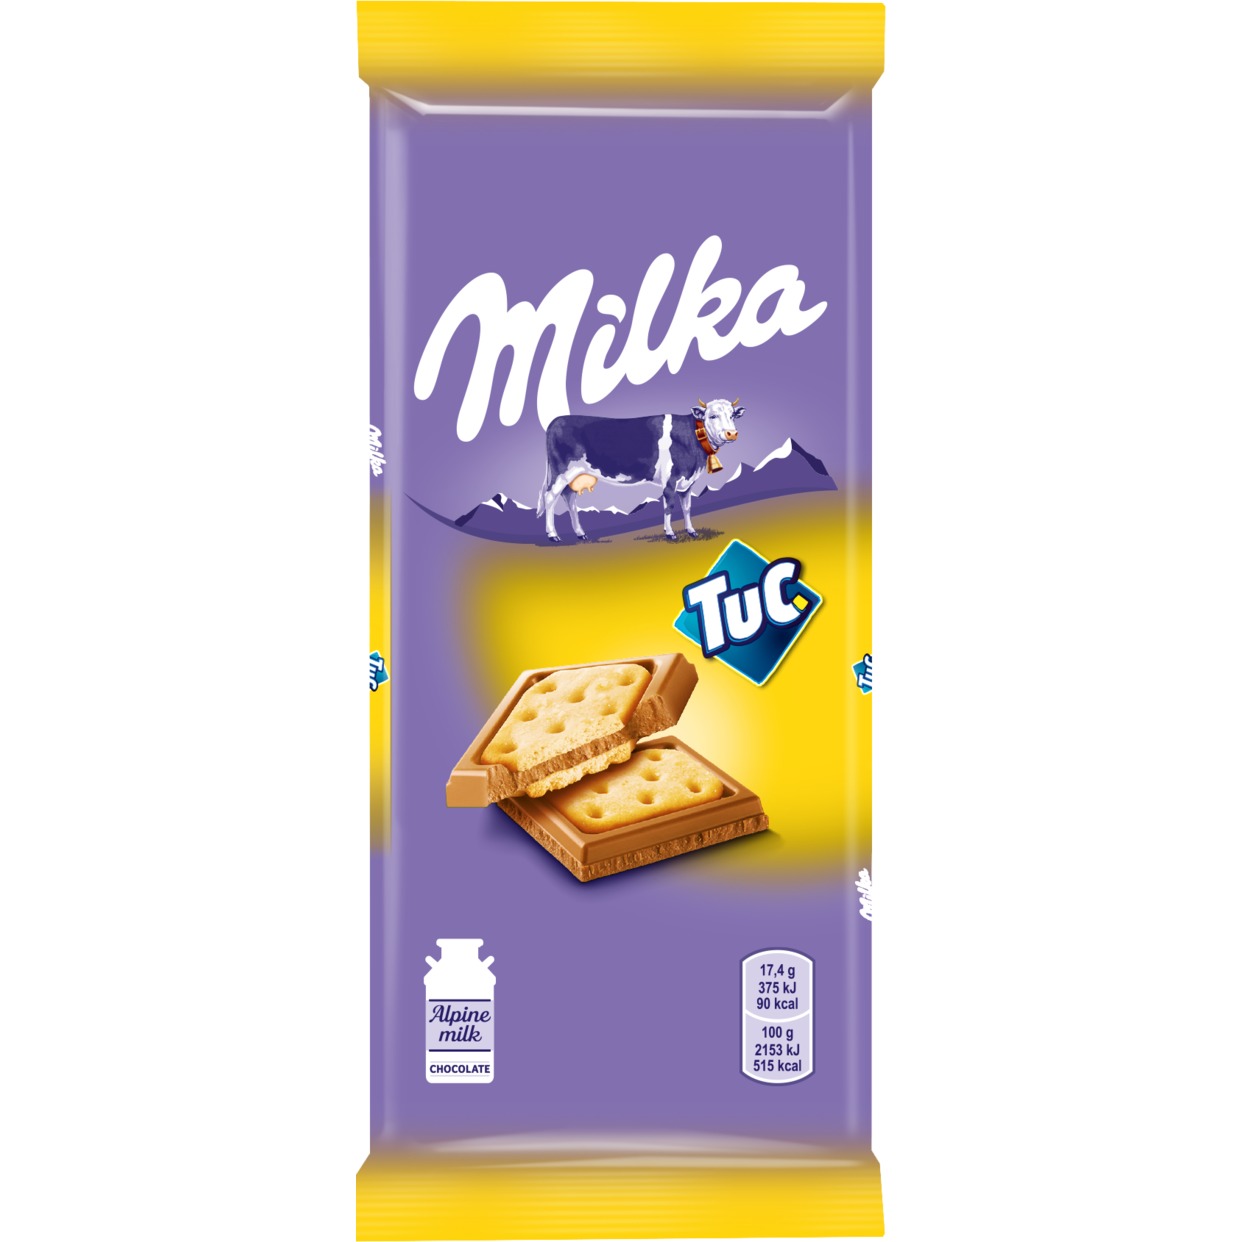 Шоколад Milka, молочный, с соленым крекером TUC, 87 г по акции в Пятерочке